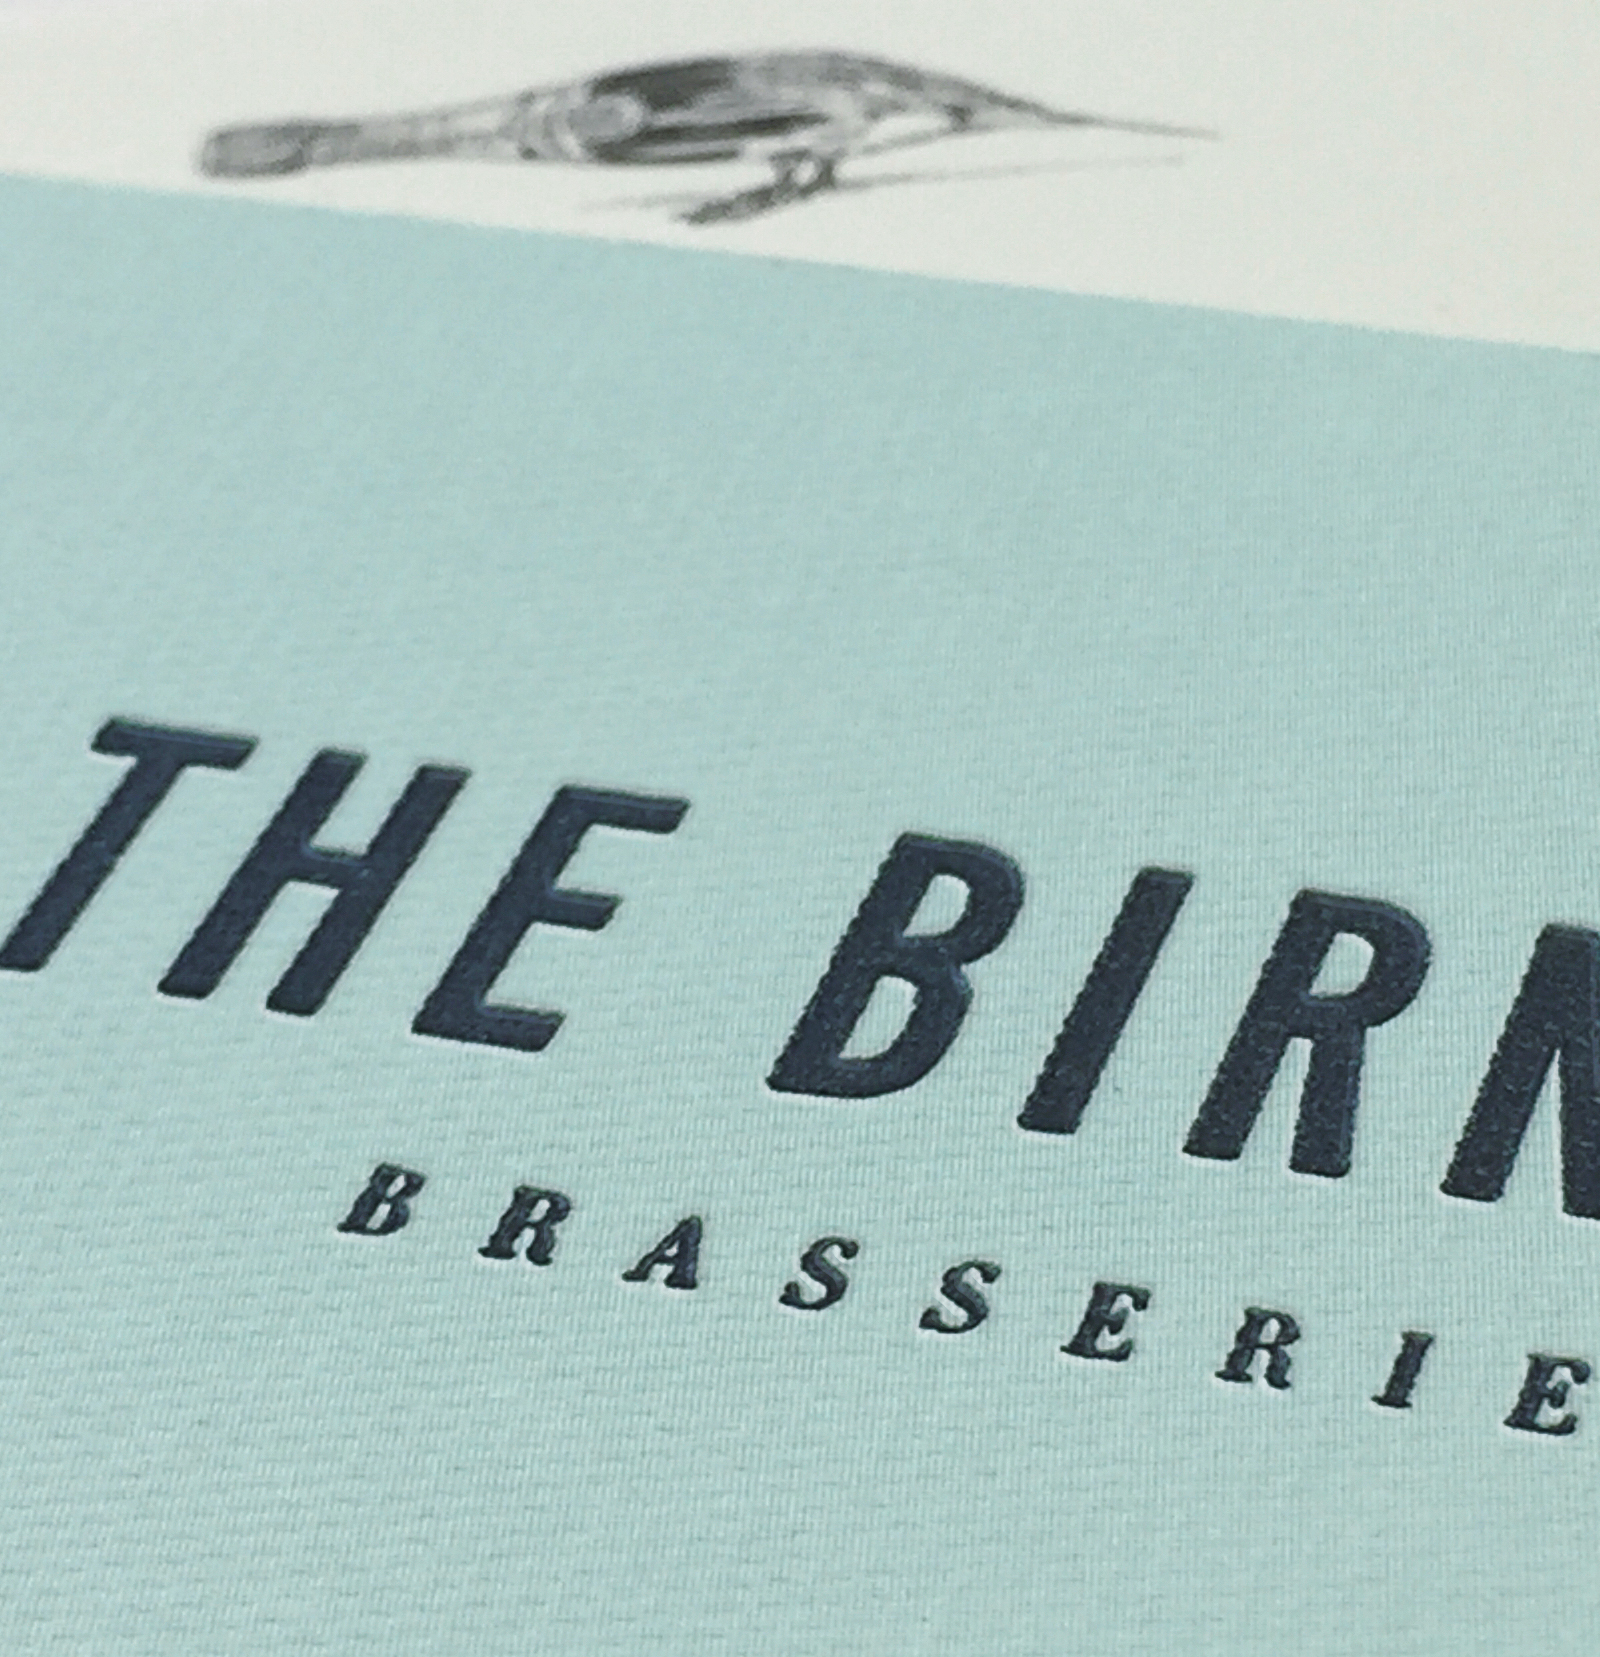 Birnam Brasserie at Gleneagles